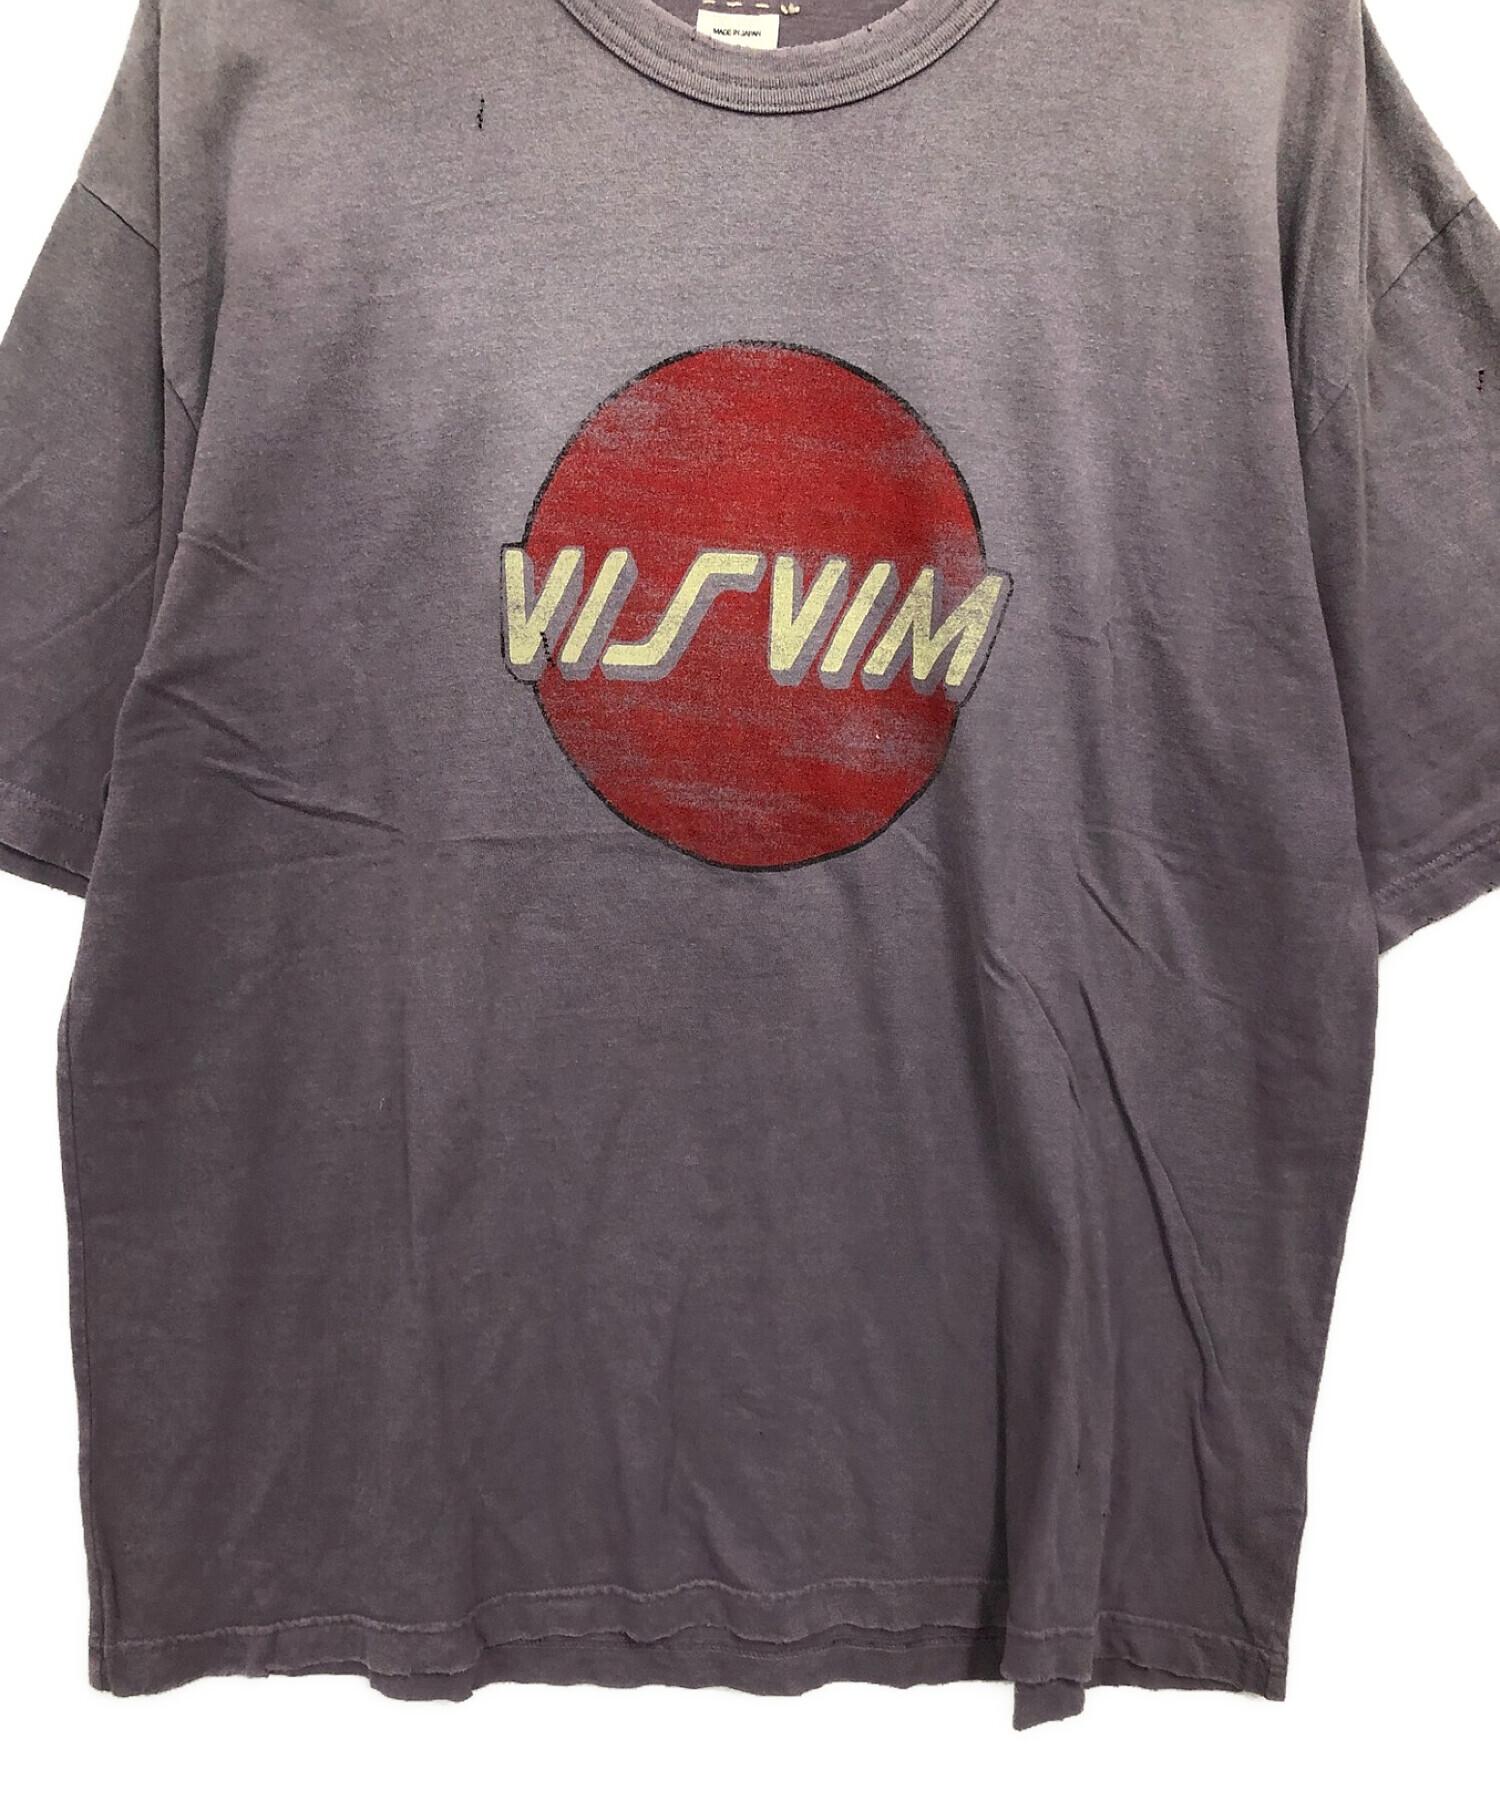 中古・古着通販】VISVIM (ビズビム) 半袖Tシャツ パープル サイズ:5